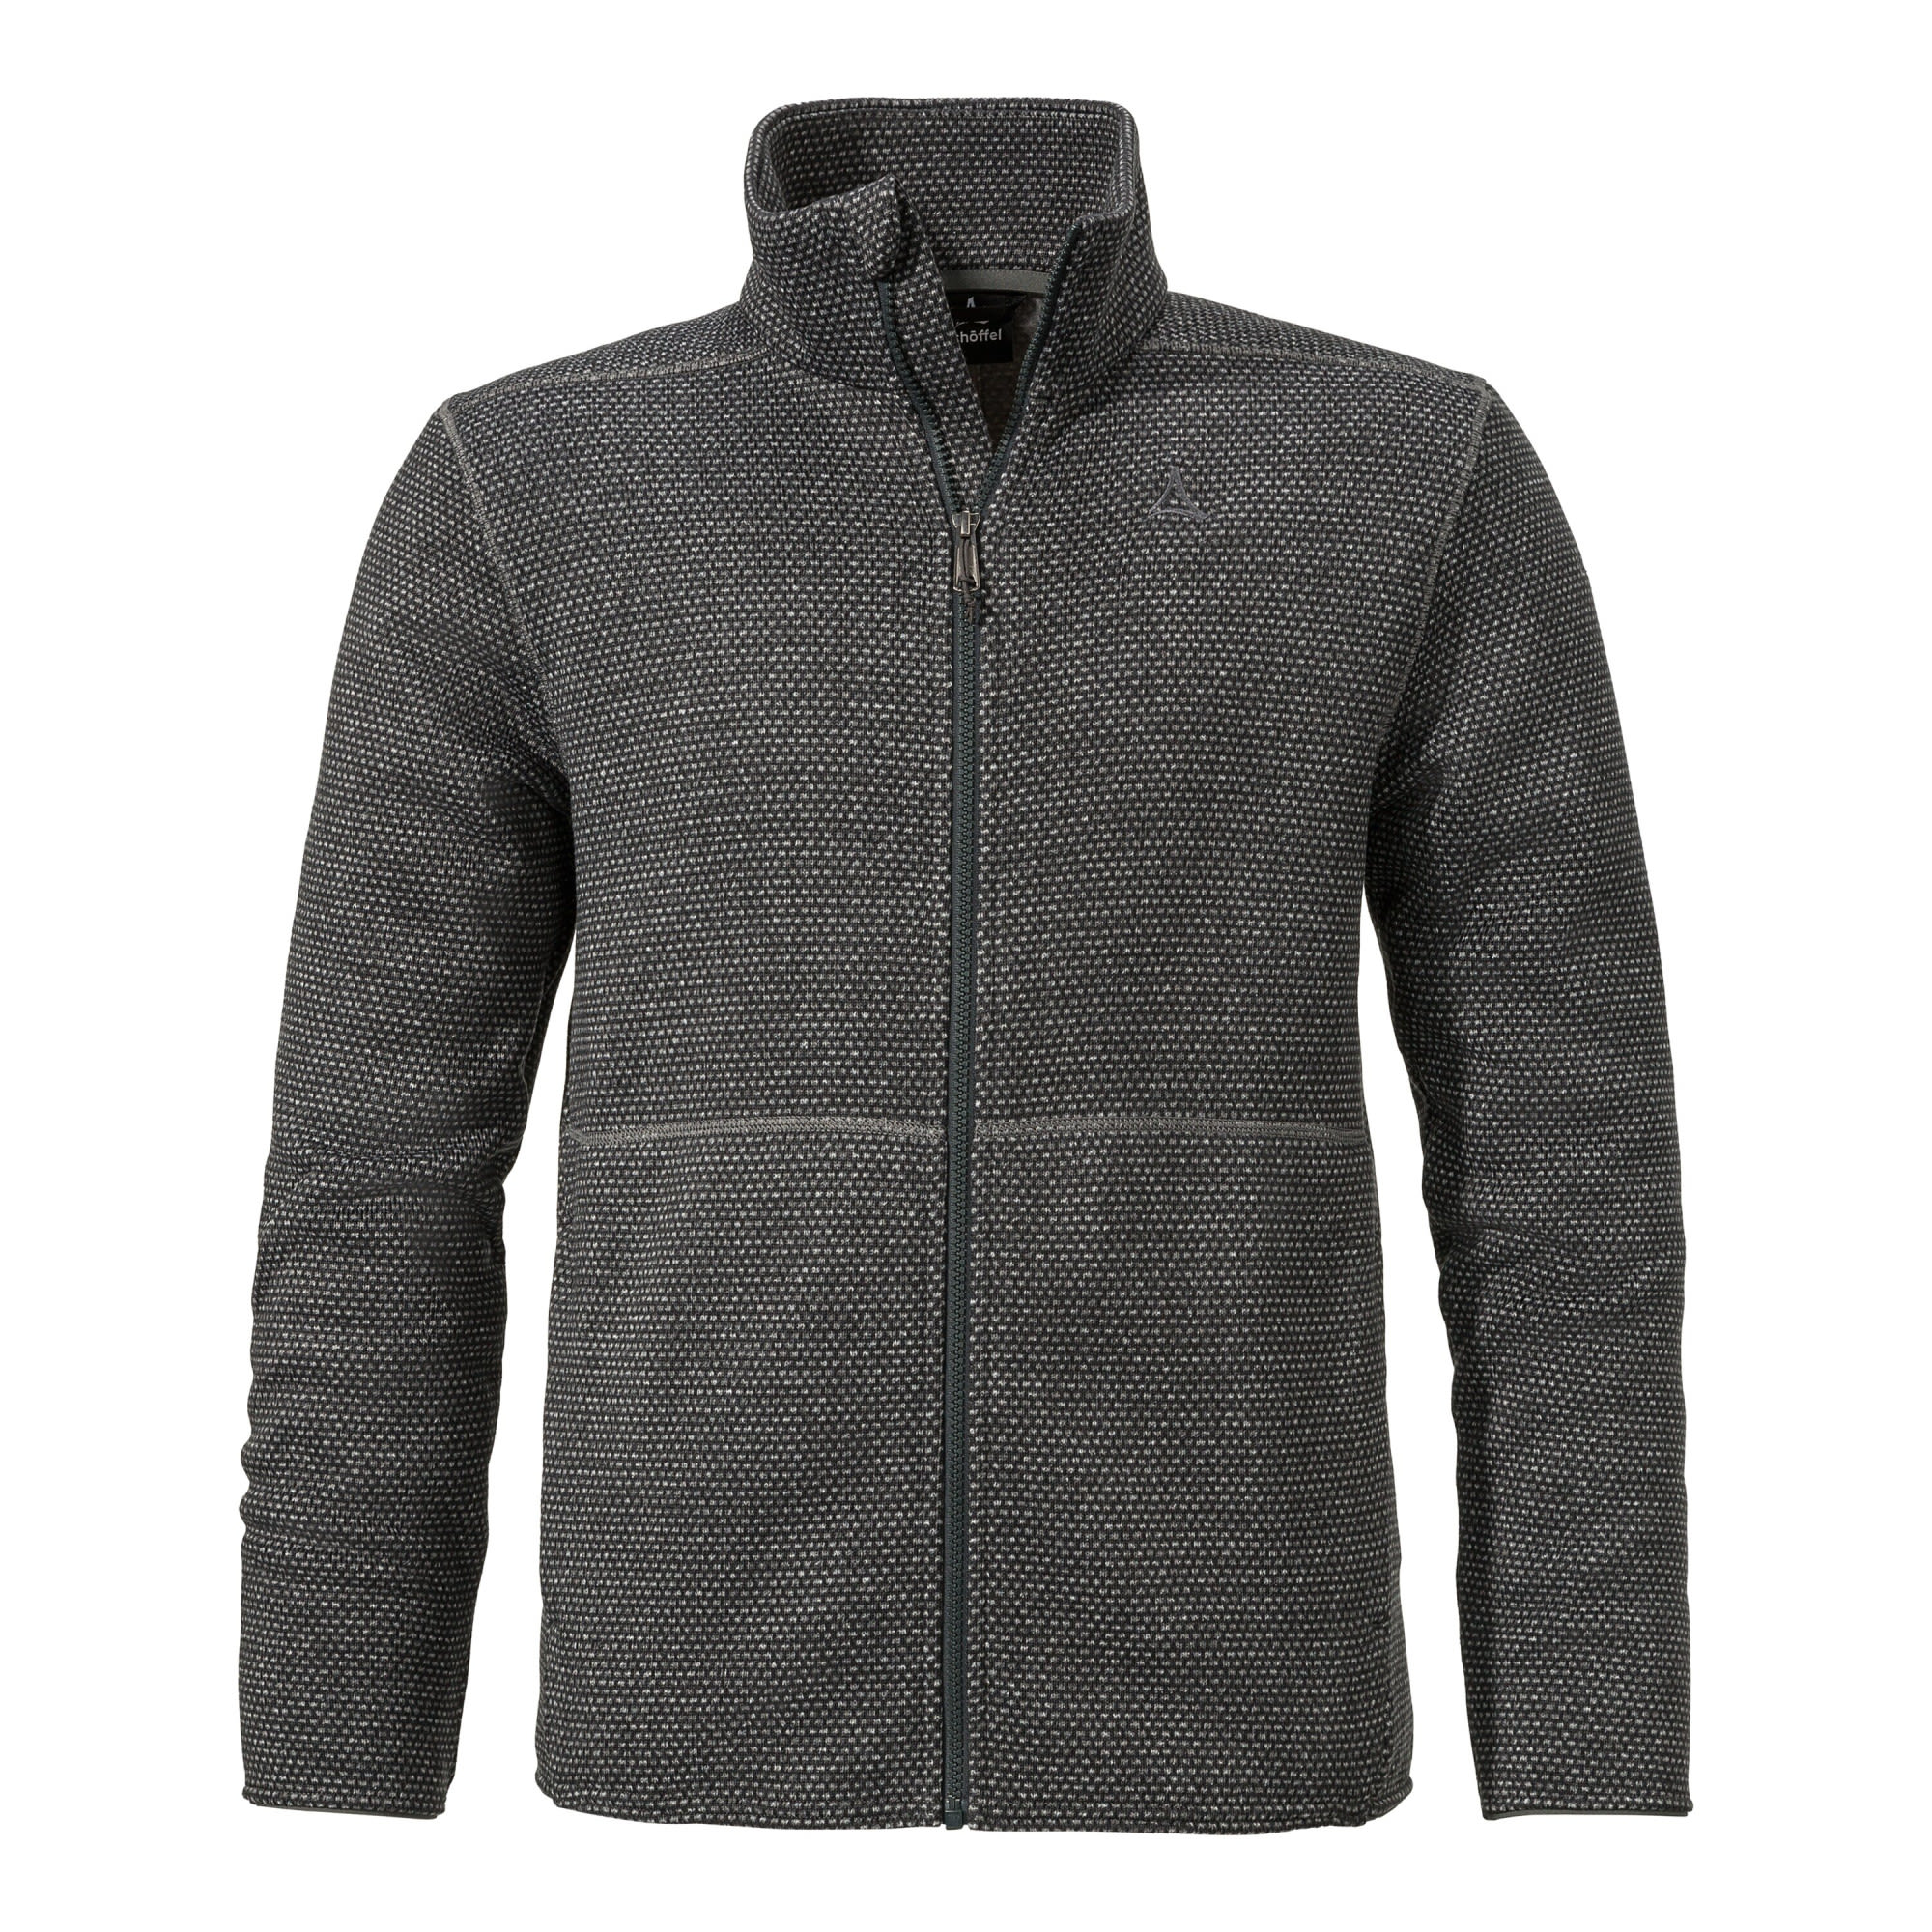 Schöffel M Fleece Jacket Aurora Grau | Größe 56 | Herren Anorak